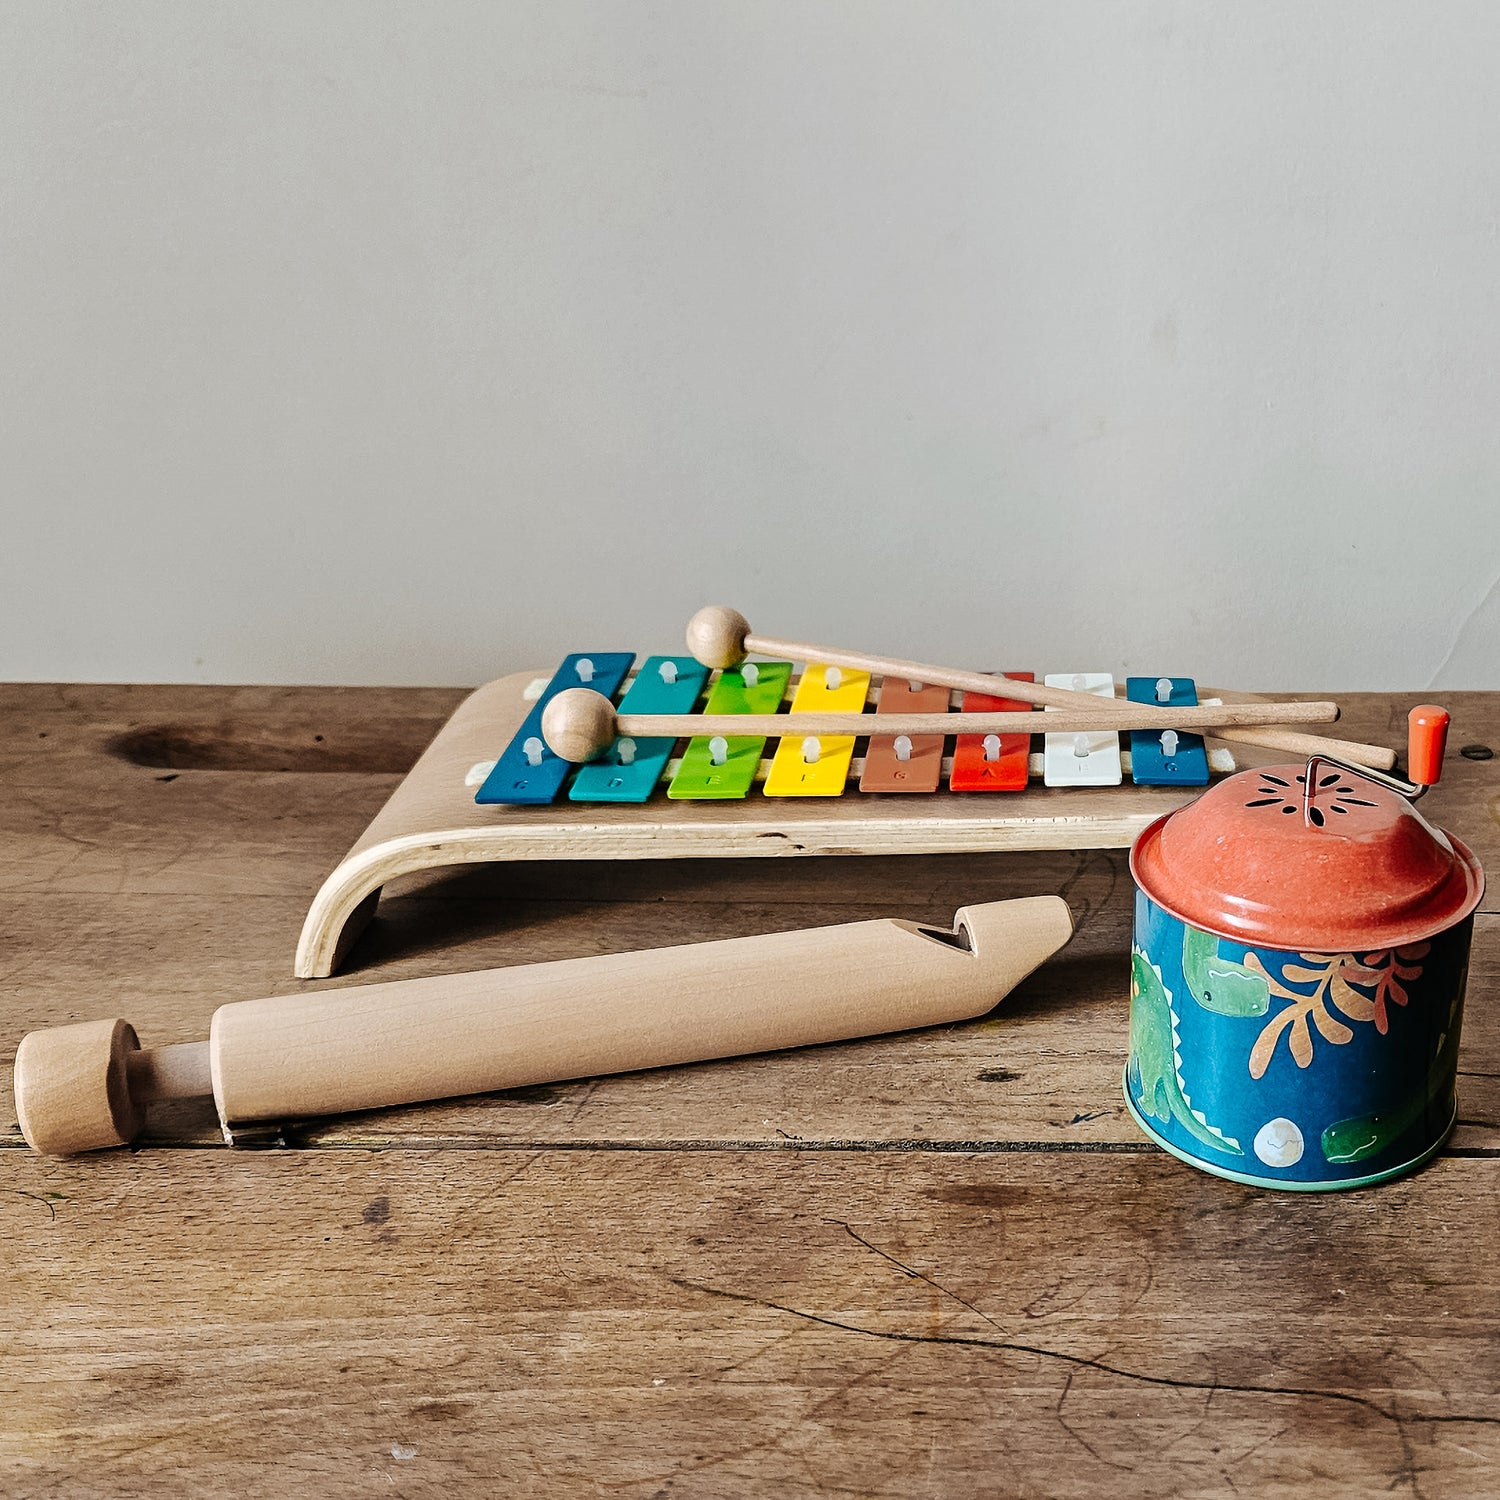 Instruments de musique : xylophone coloré 8 notes, flûte à coulisse, boîte à musique dinosaures